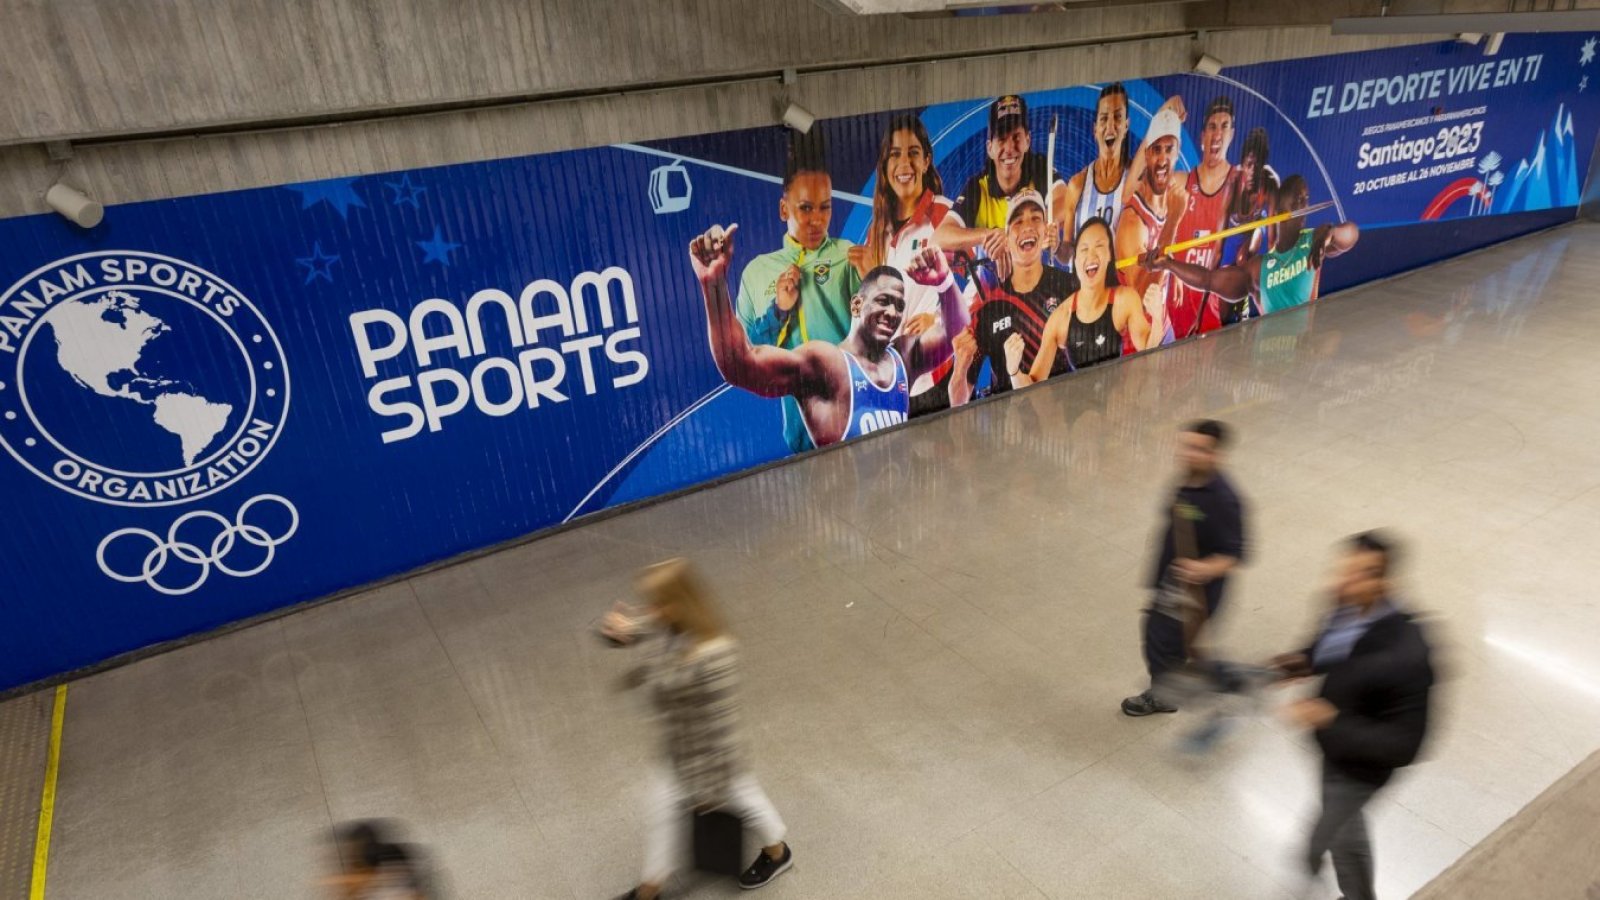 Archivo:Logotipo Oficial Juegos Panamericanos Lima 2019.png